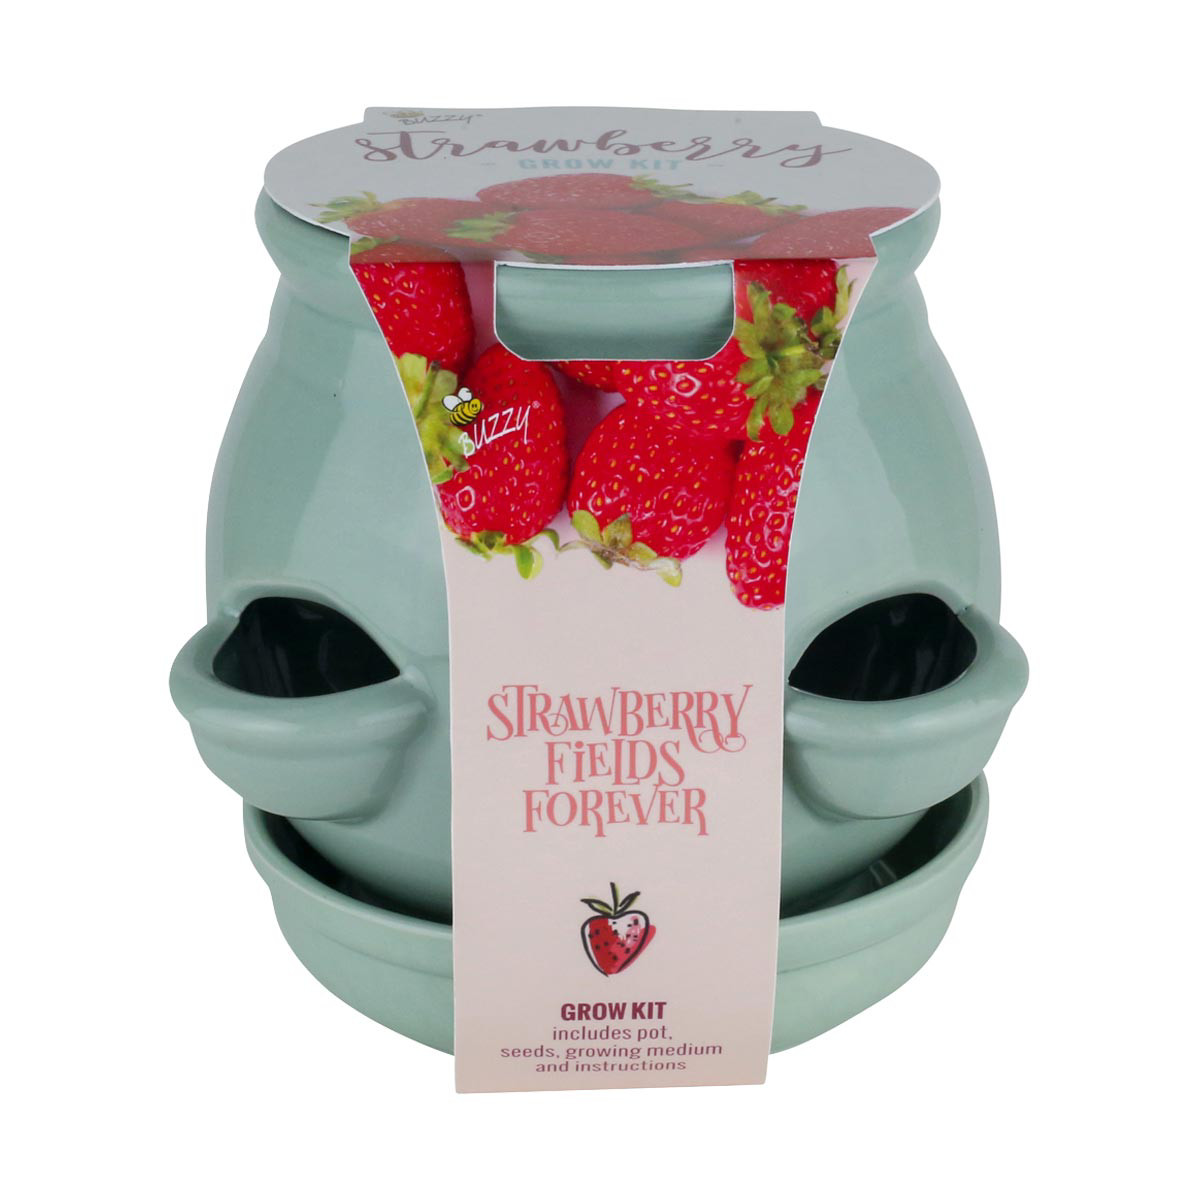 Buzzy Strawberry Fields Forever Grow Kit with 4 Pockets Ceramic Pot